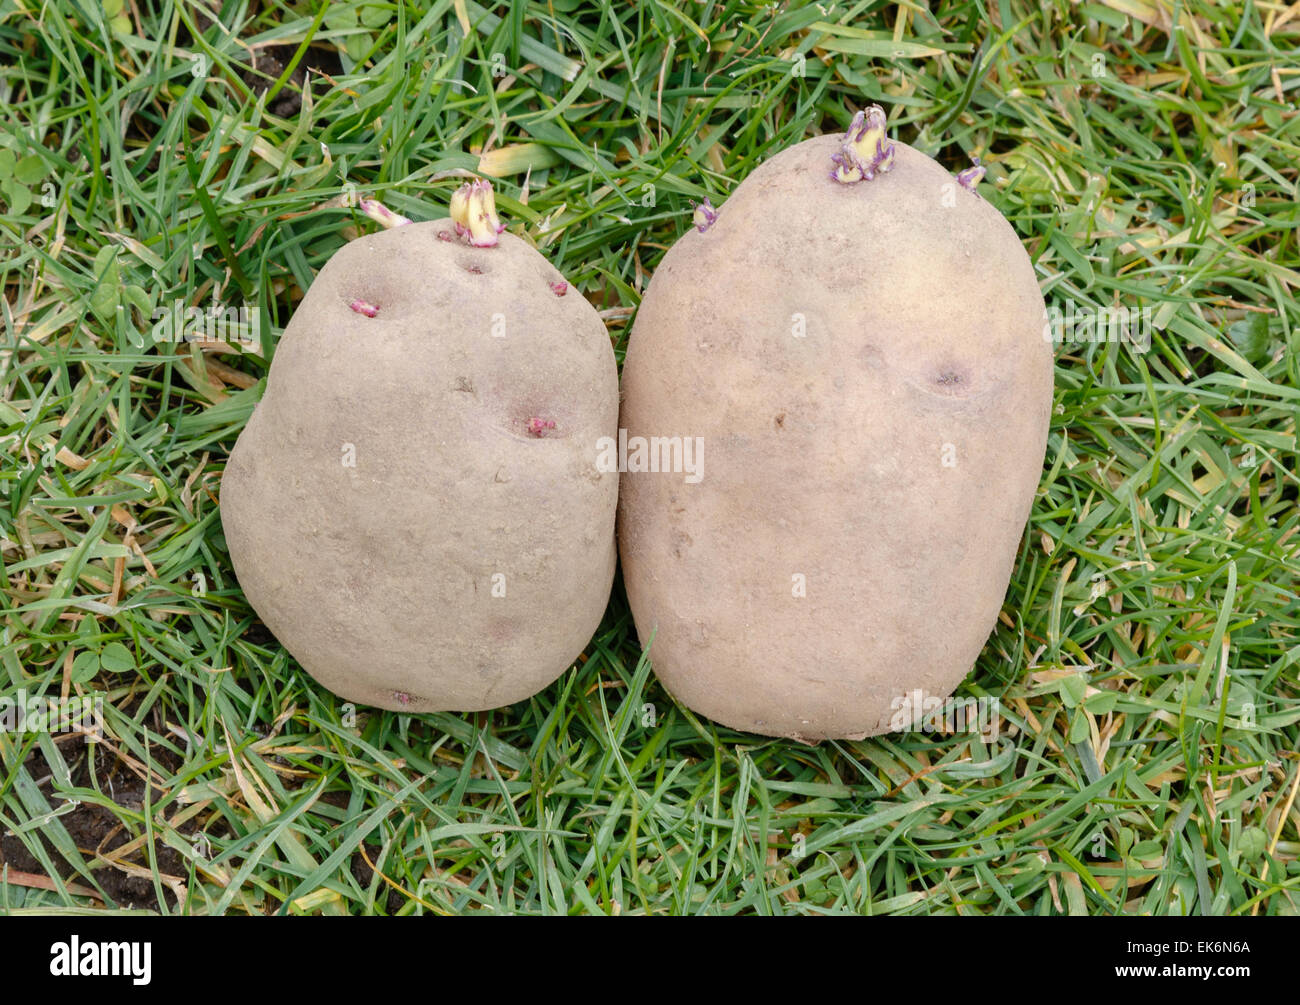 Tuberi seme di patate con germogli verdi o chits pronto per piantare in un giardino vegetale Foto Stock